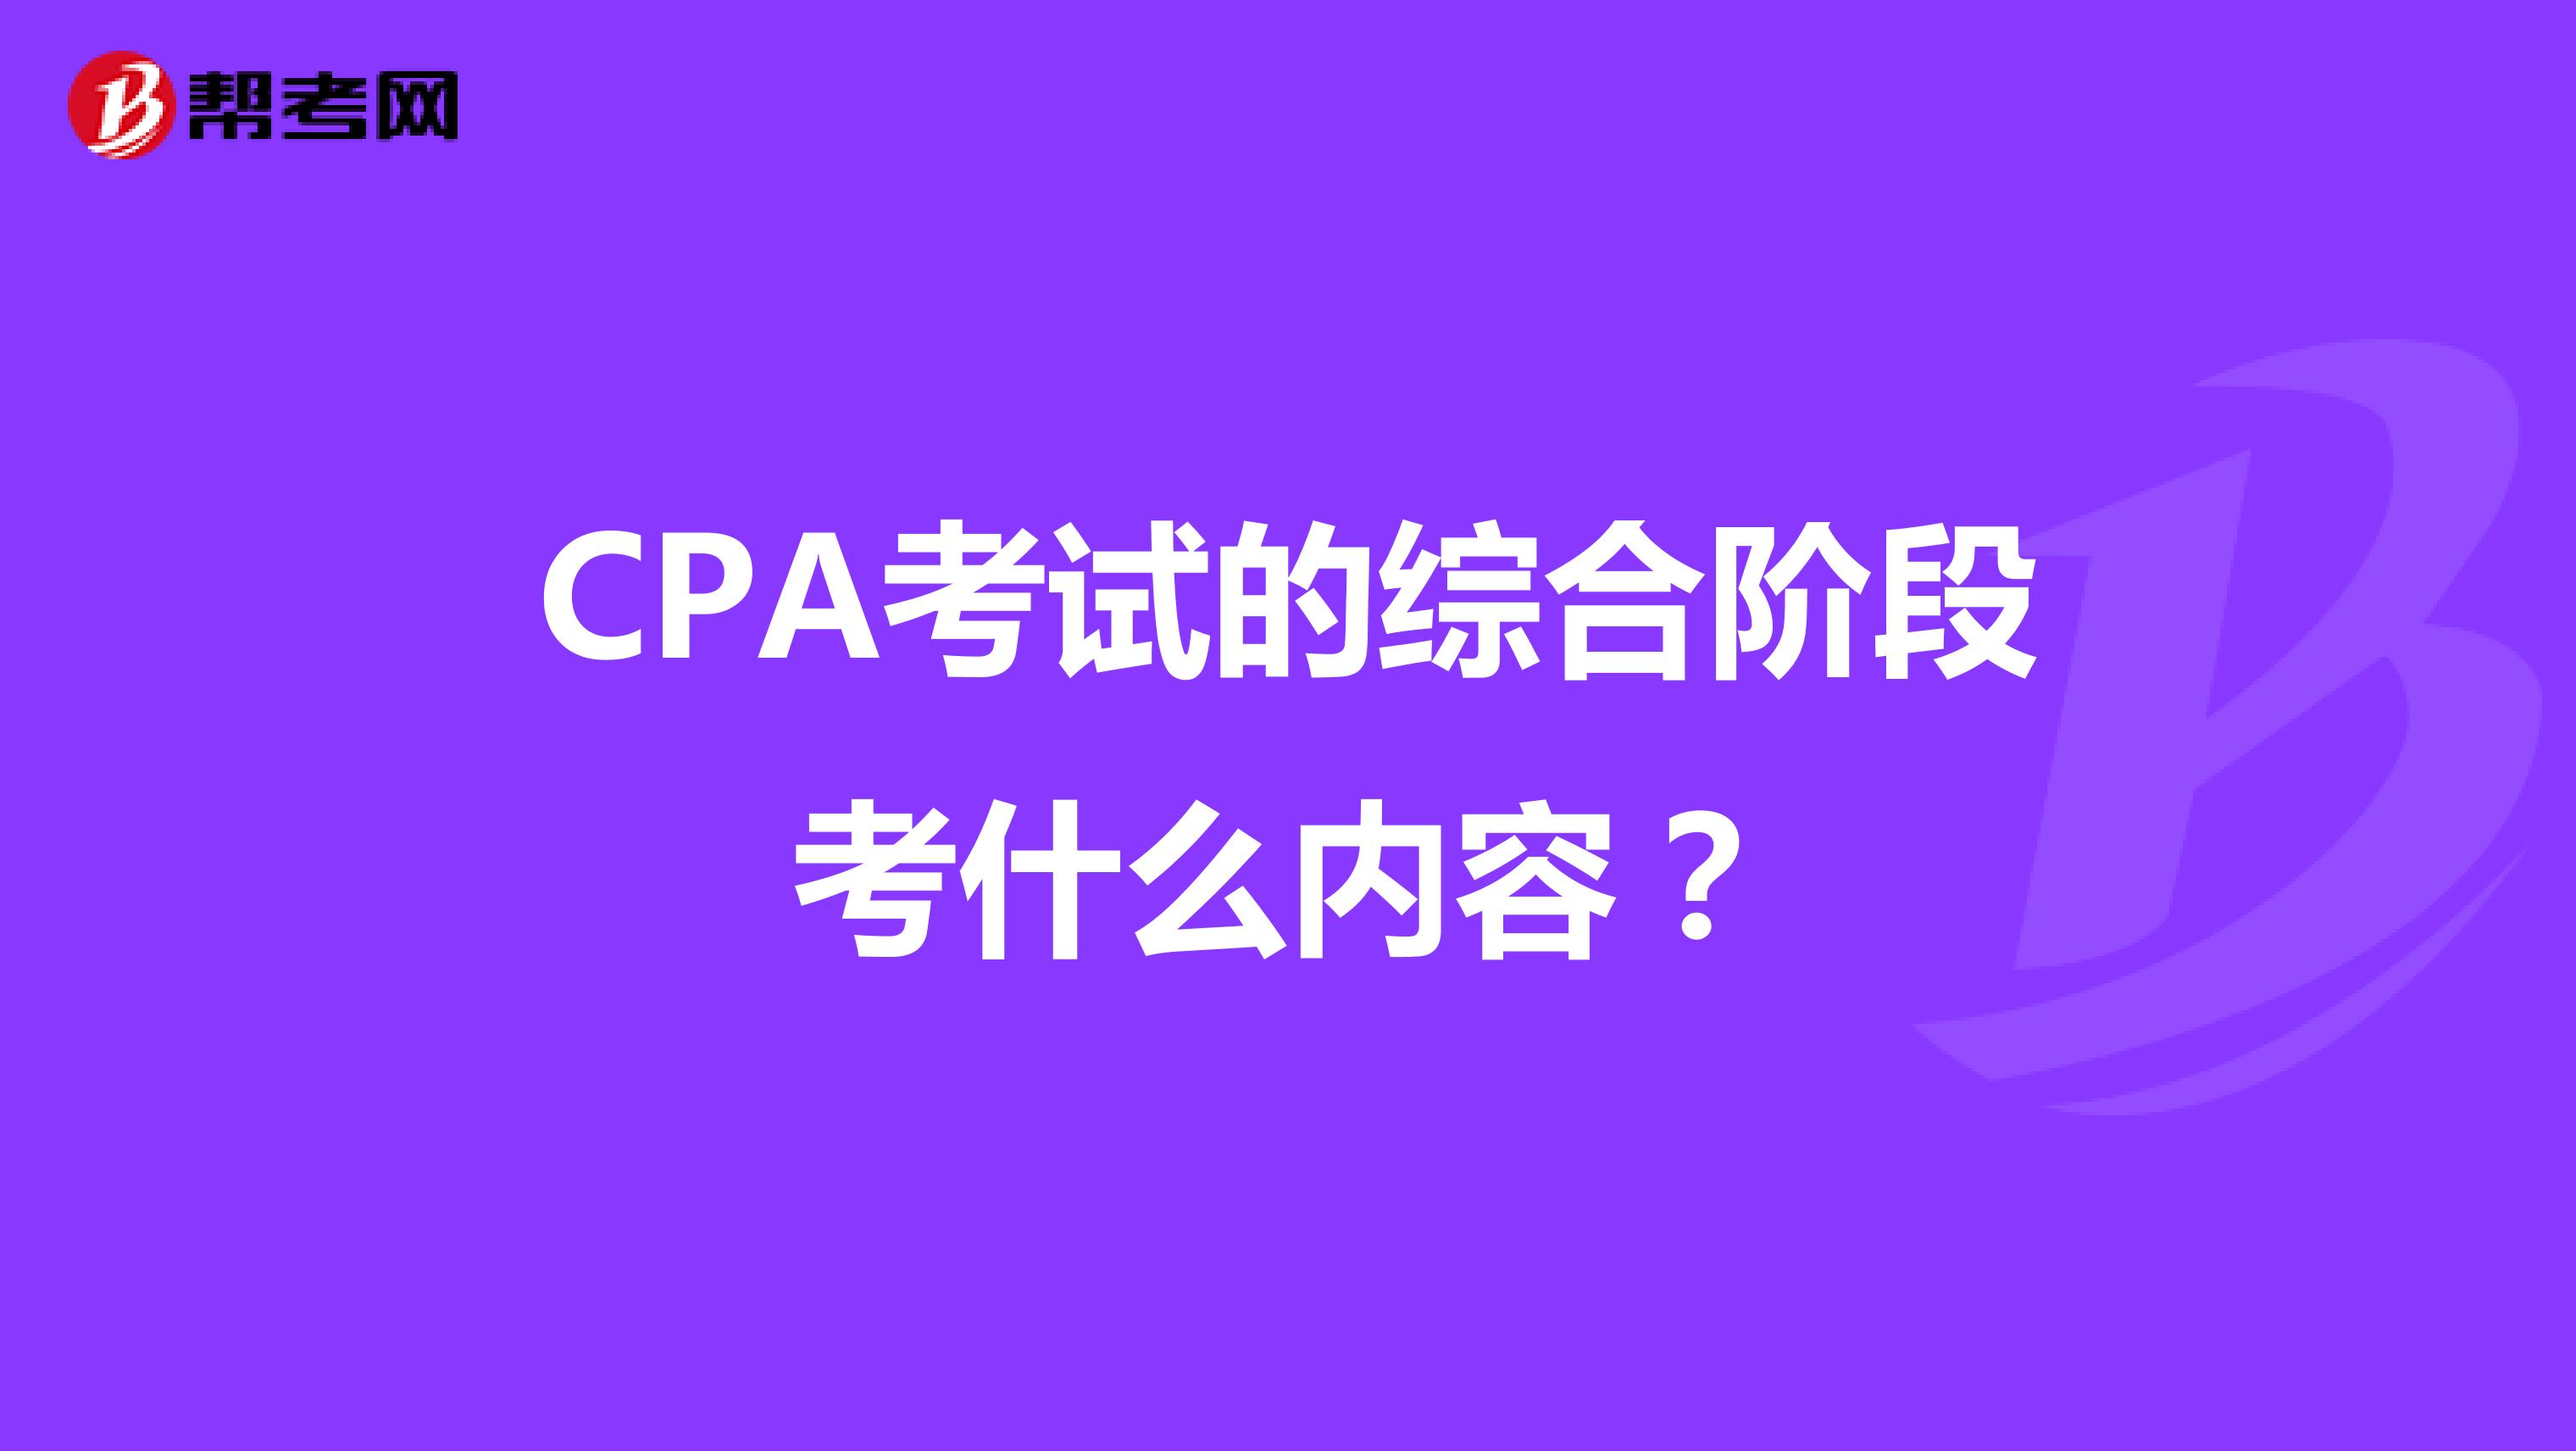 CPA考试的综合阶段考什么内容？